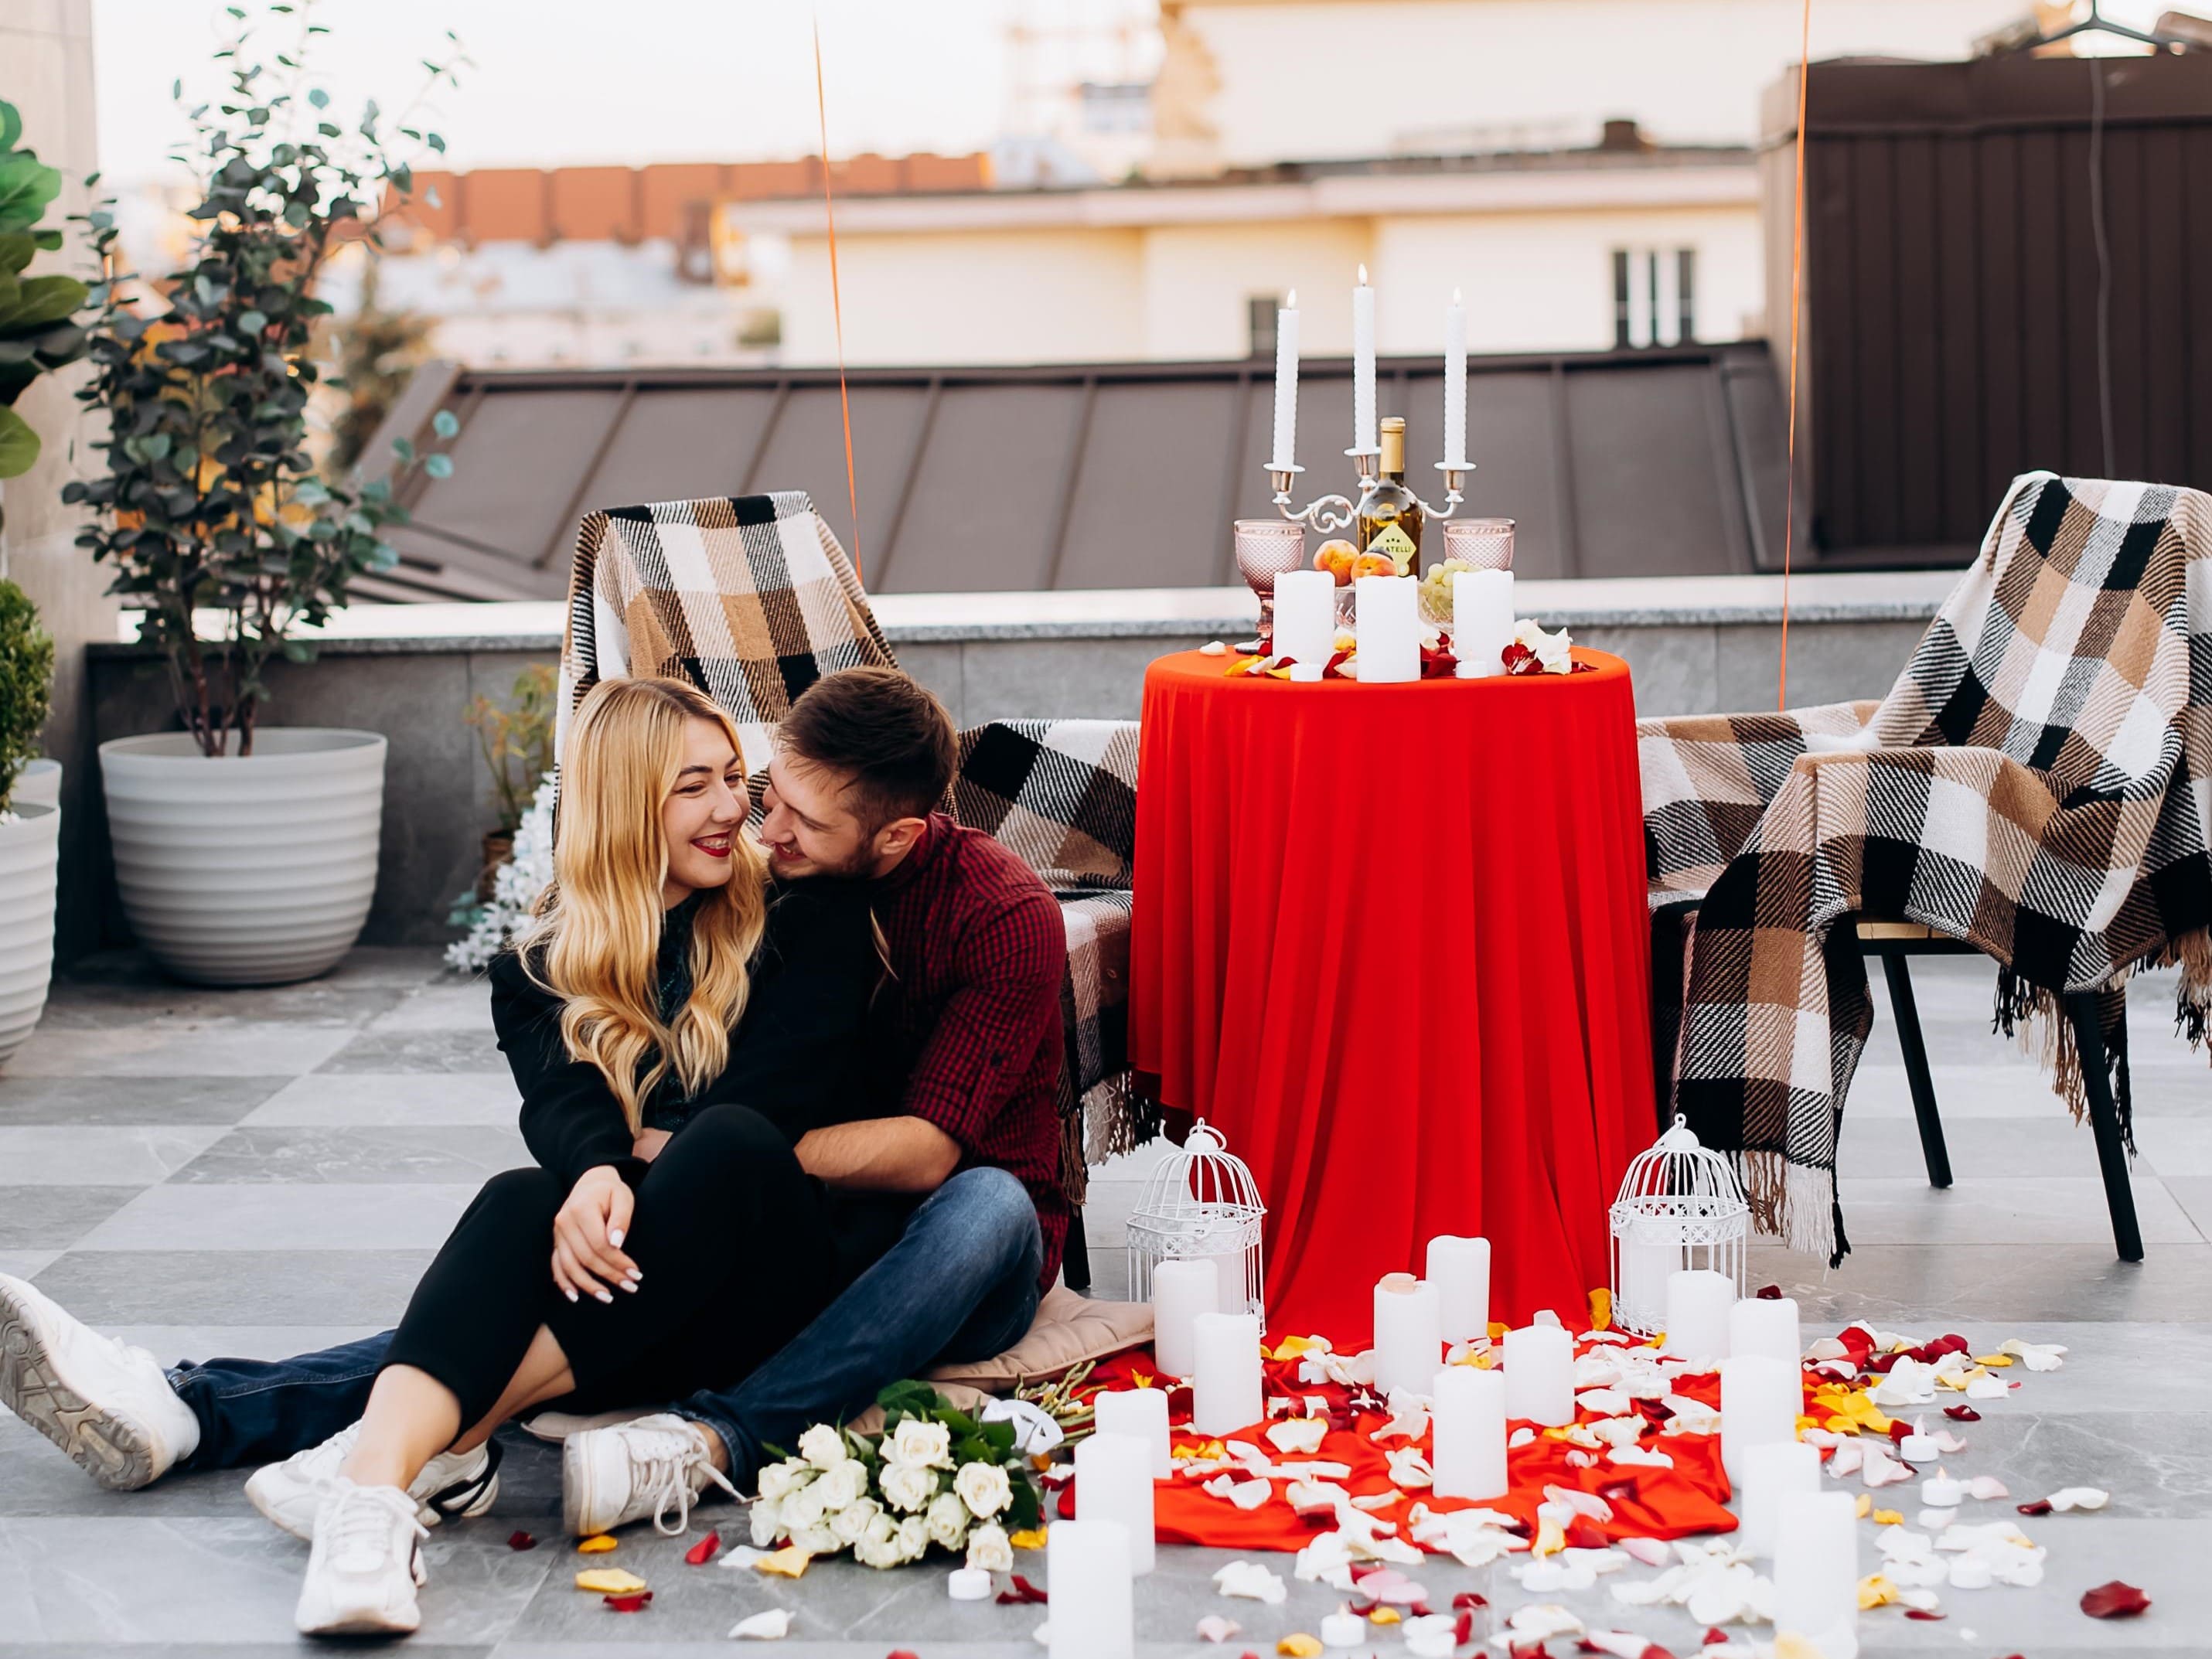 Романтичне побачення на даху з видом на Ратушу